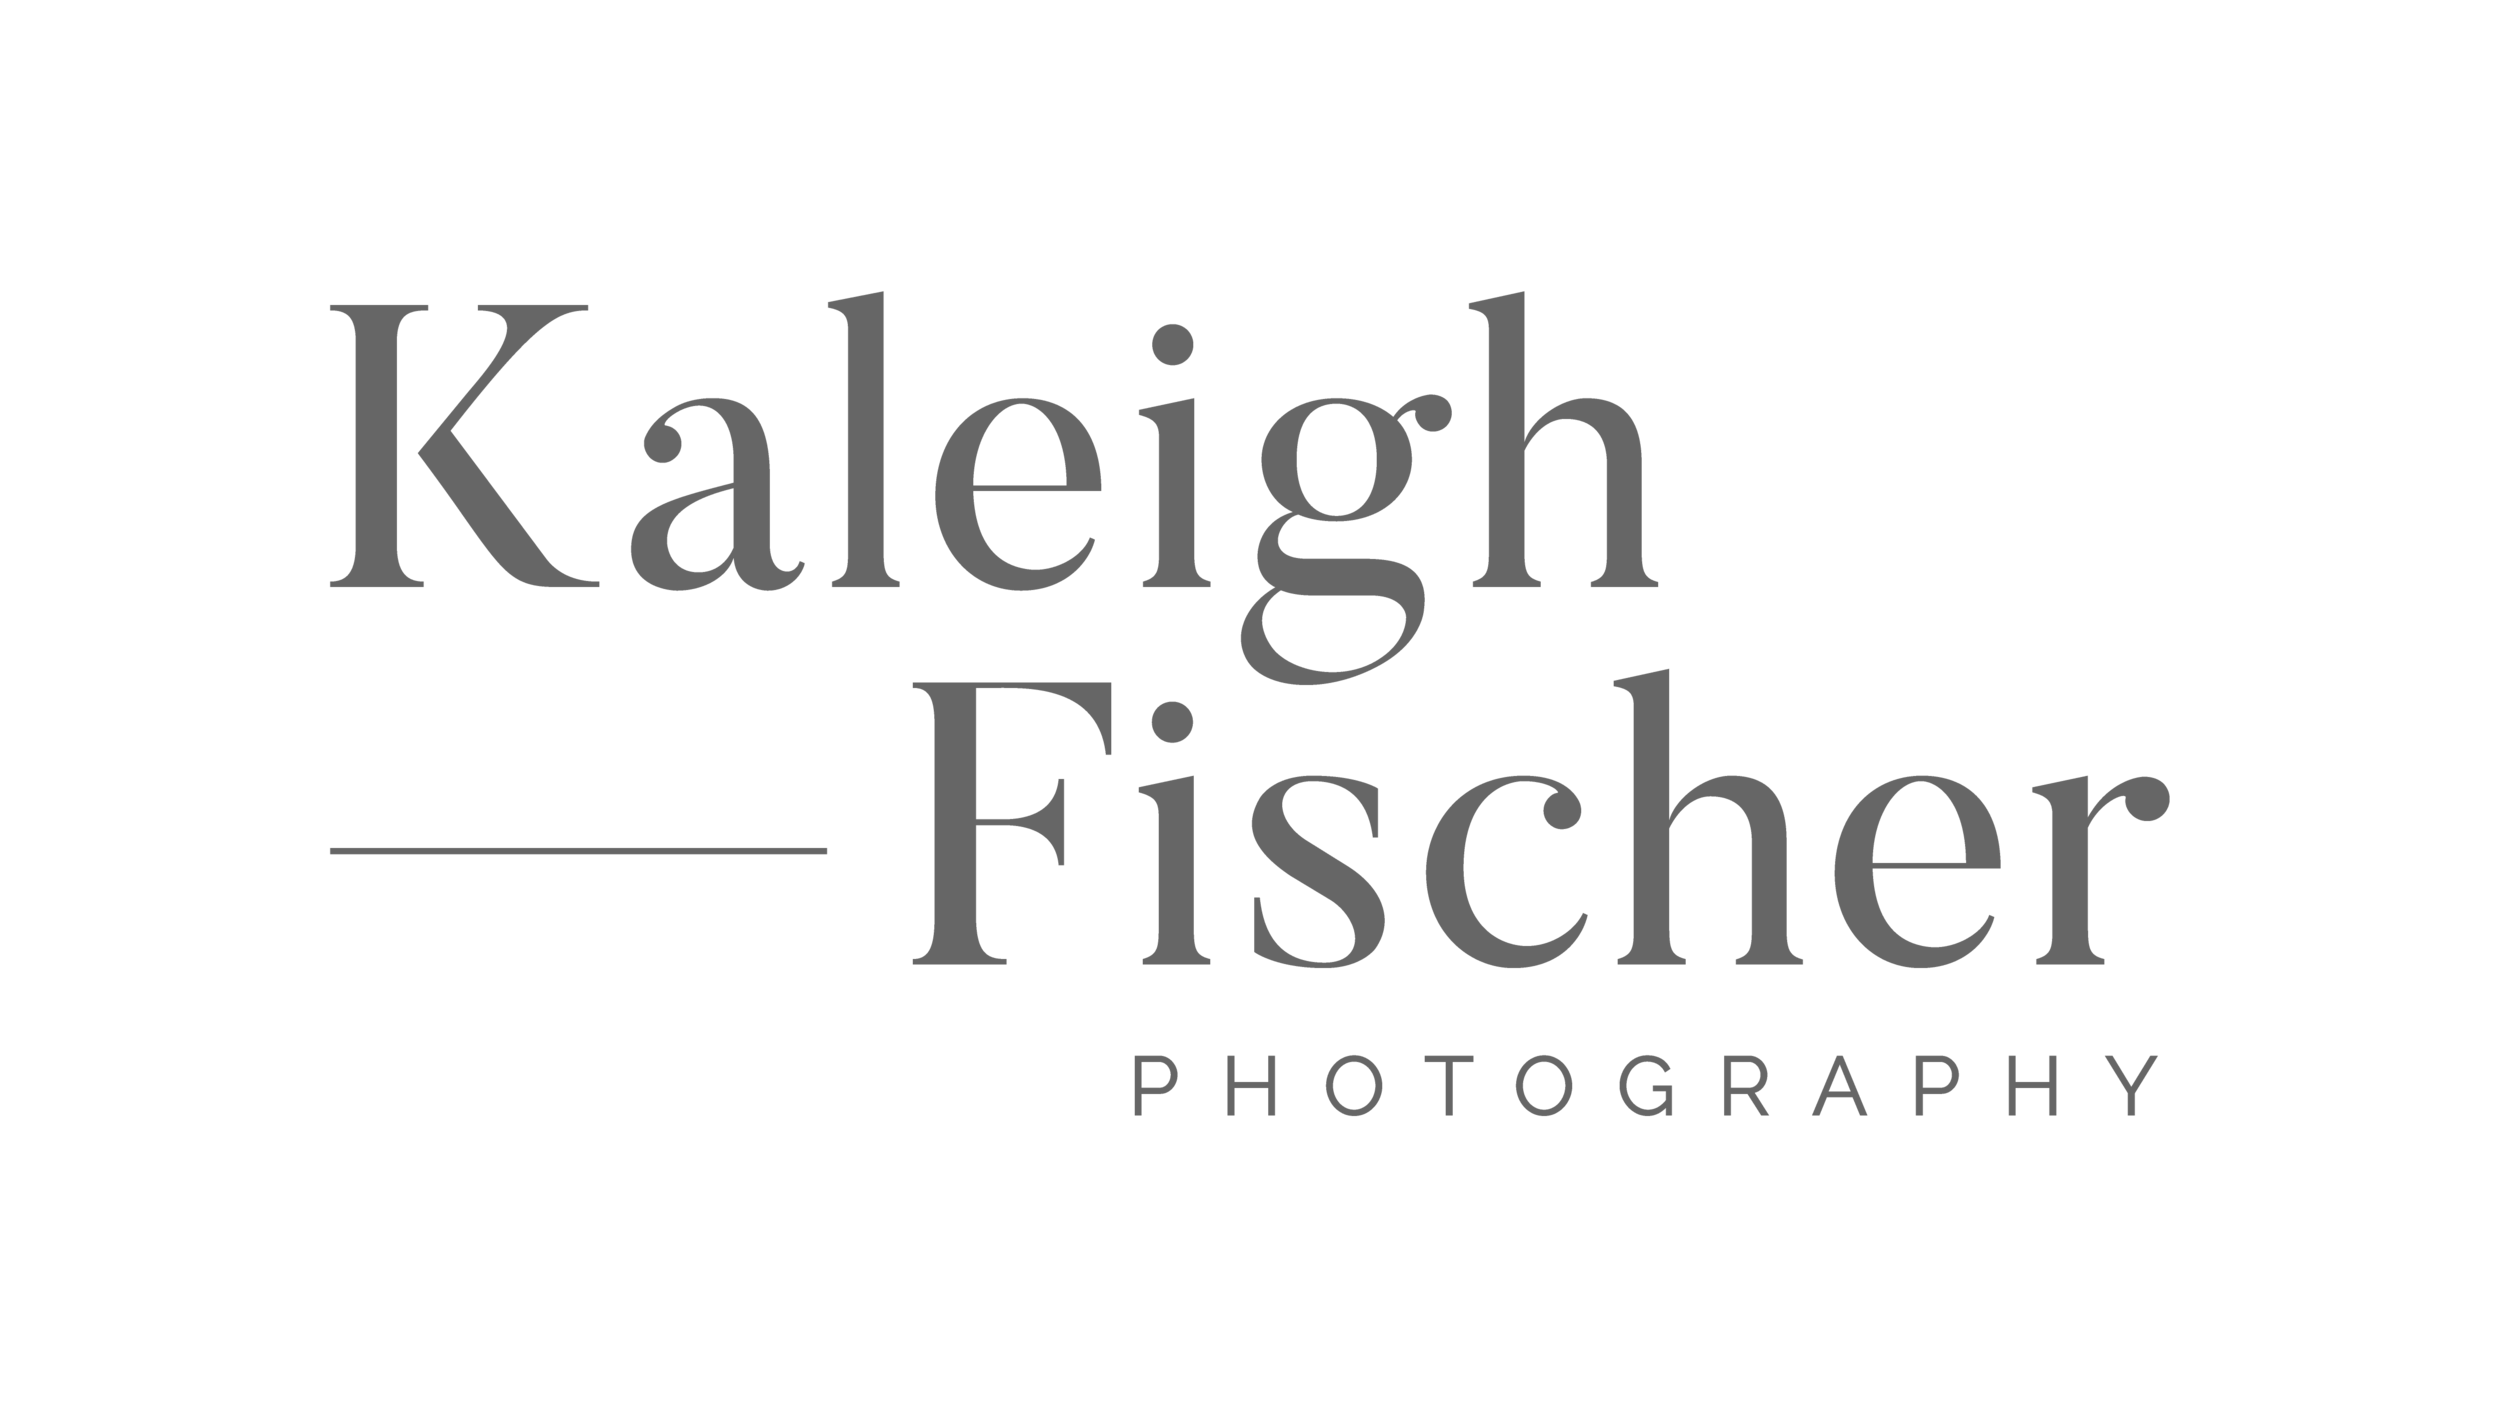 Kaleigh Fischer Photography